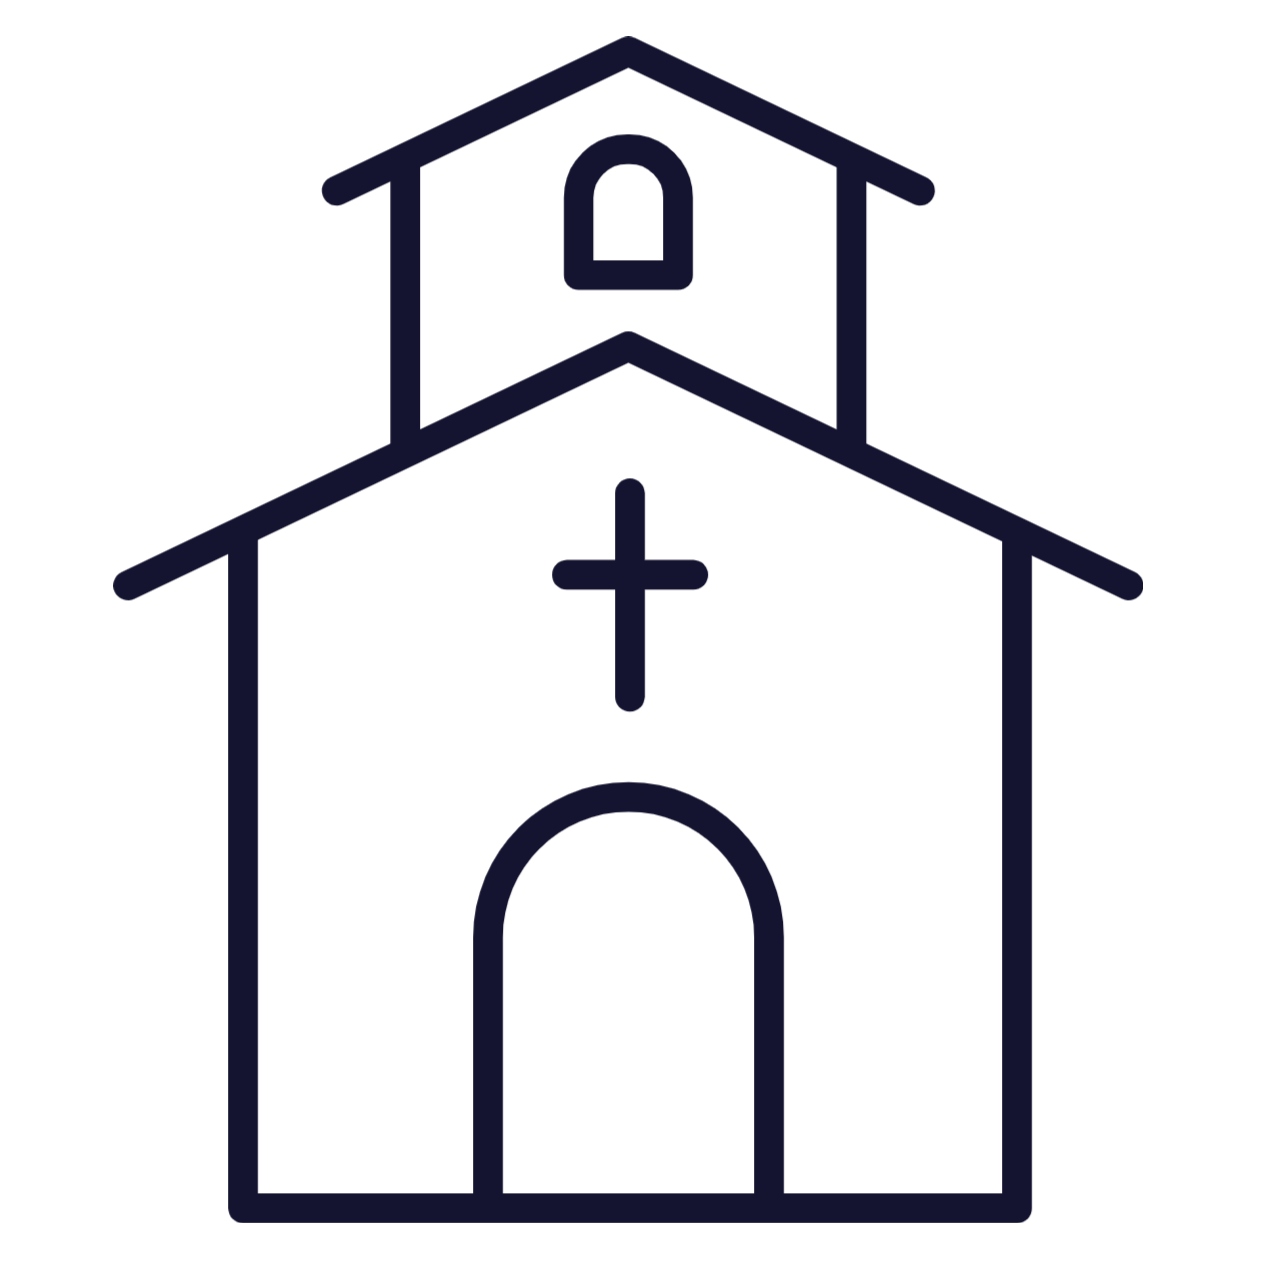 4. Churches or House Churches